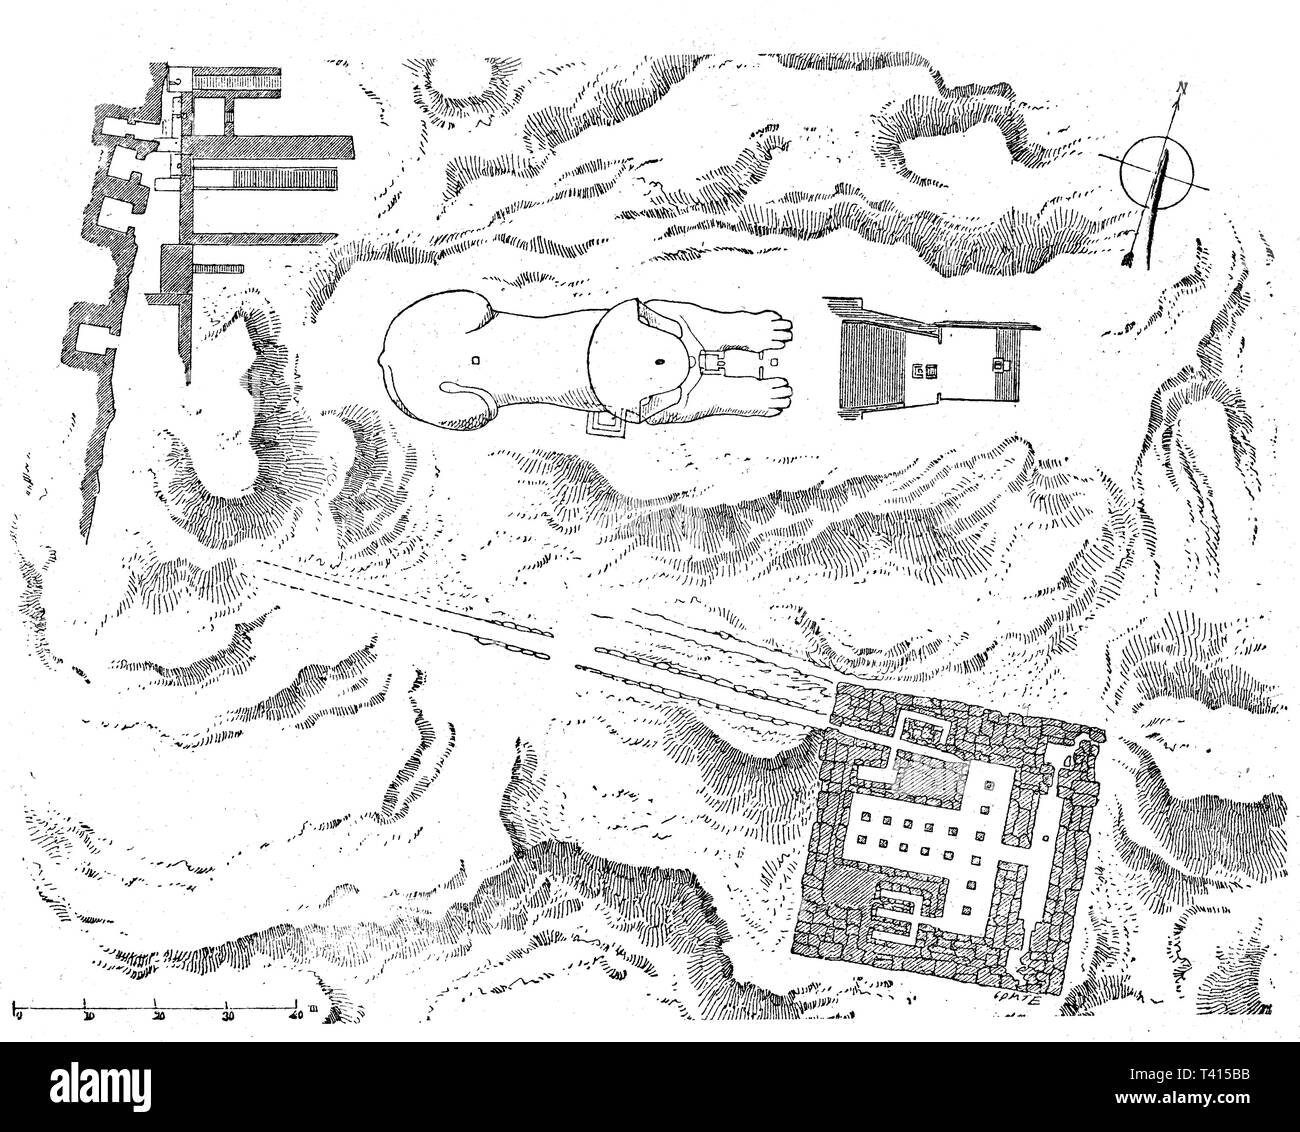 Mappa aerea del grande Sphink e la Sfinge due templi di Gizah. La Grande Sfinge è una colossale staue in calcare di una mitica creatura con il corpo di un leone e la testa di un essere umano Foto Stock